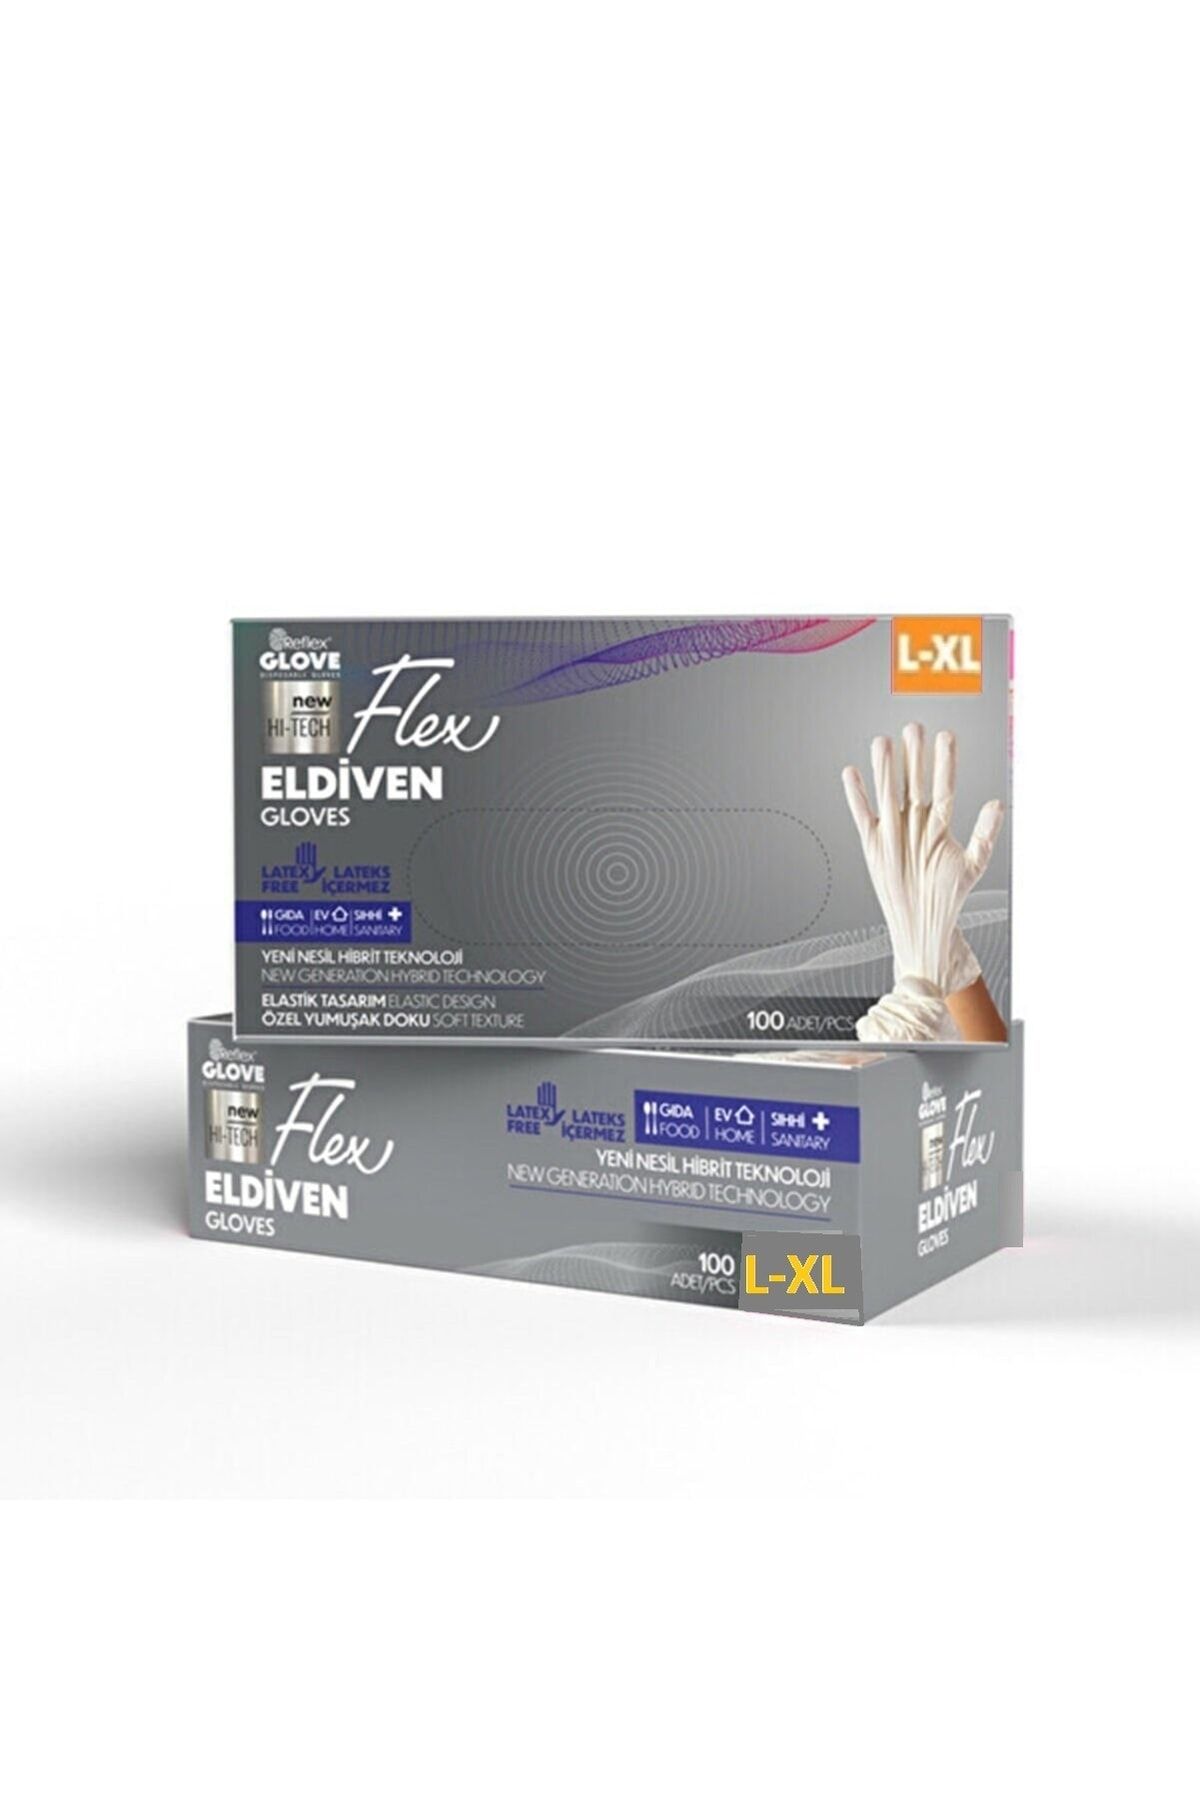 Reflex Flex Eldiven Glove Pudrasız 100 Lü Bej Krem Rengi / L-xl Beden Dayanıklı Eldiven Latex Içermez